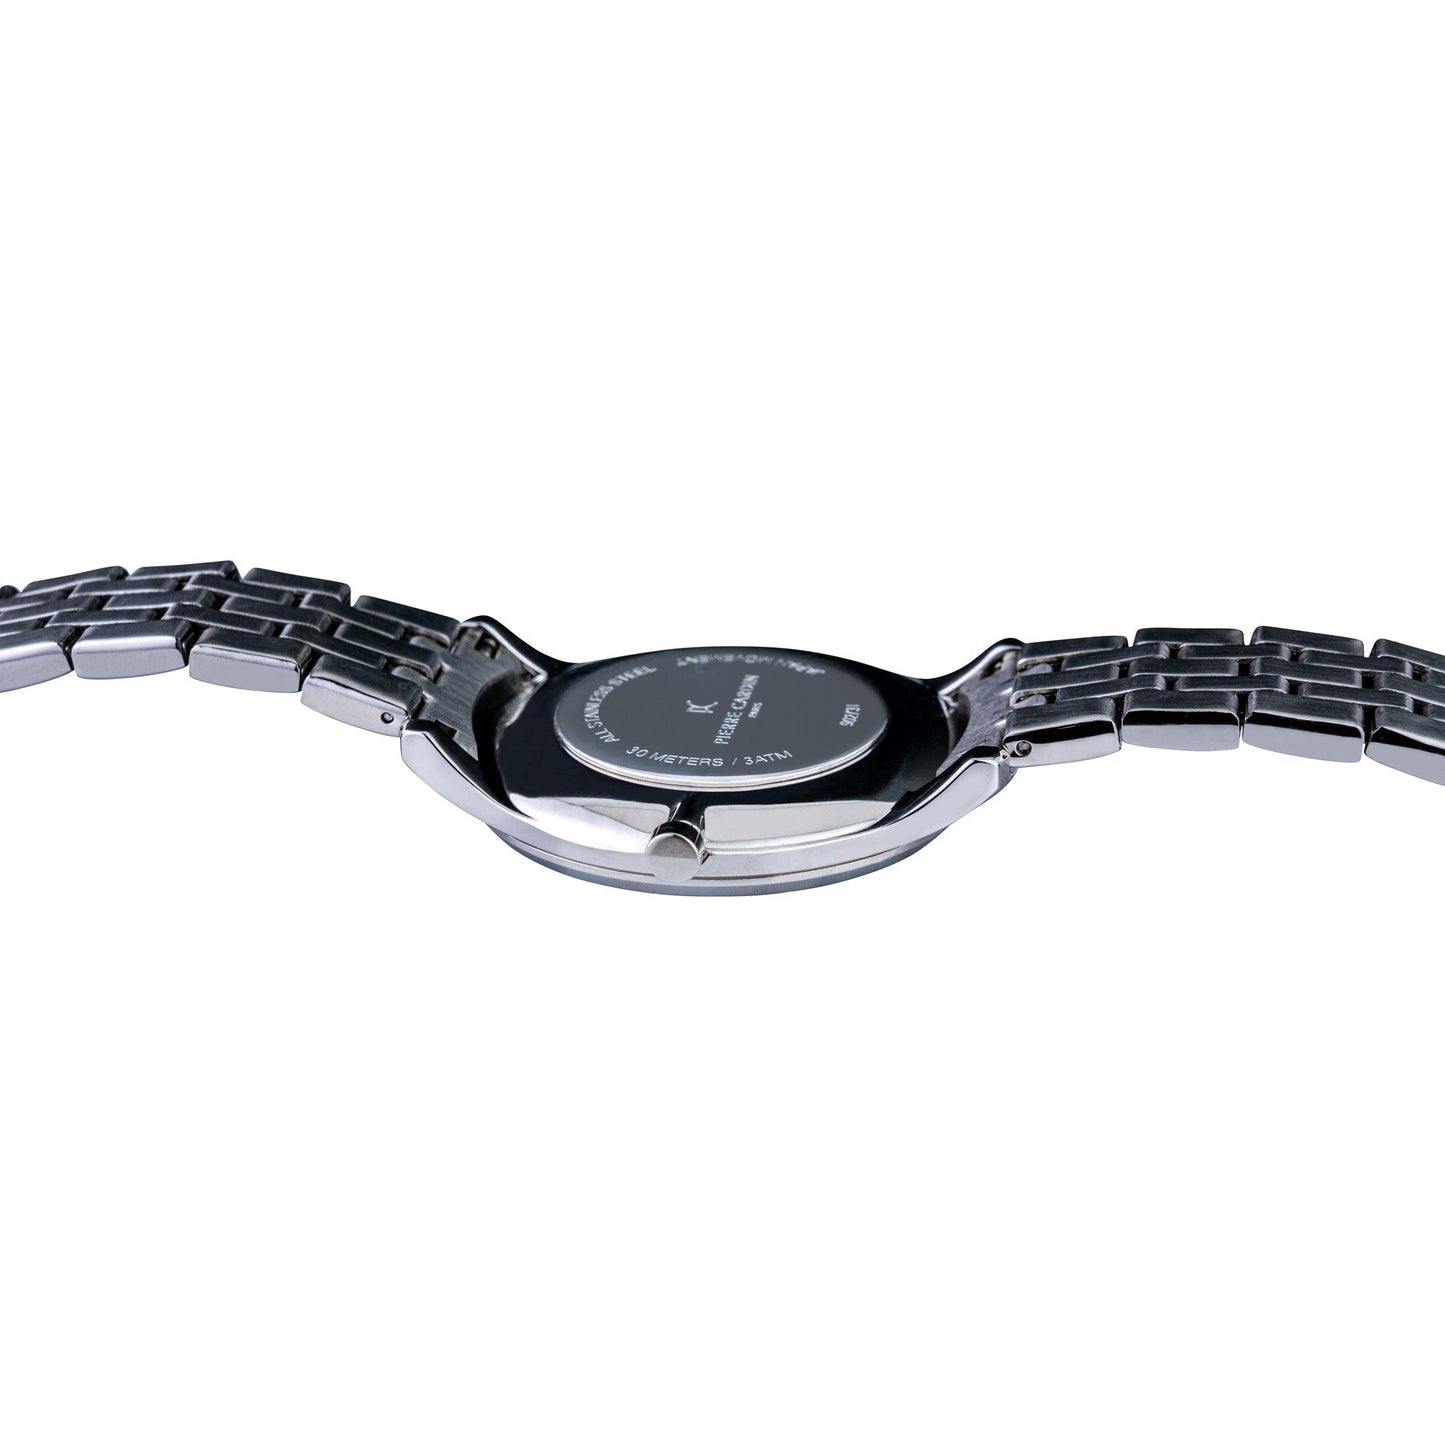 Pierre Cardin Stainless Steel Men's Watch PC902731F108